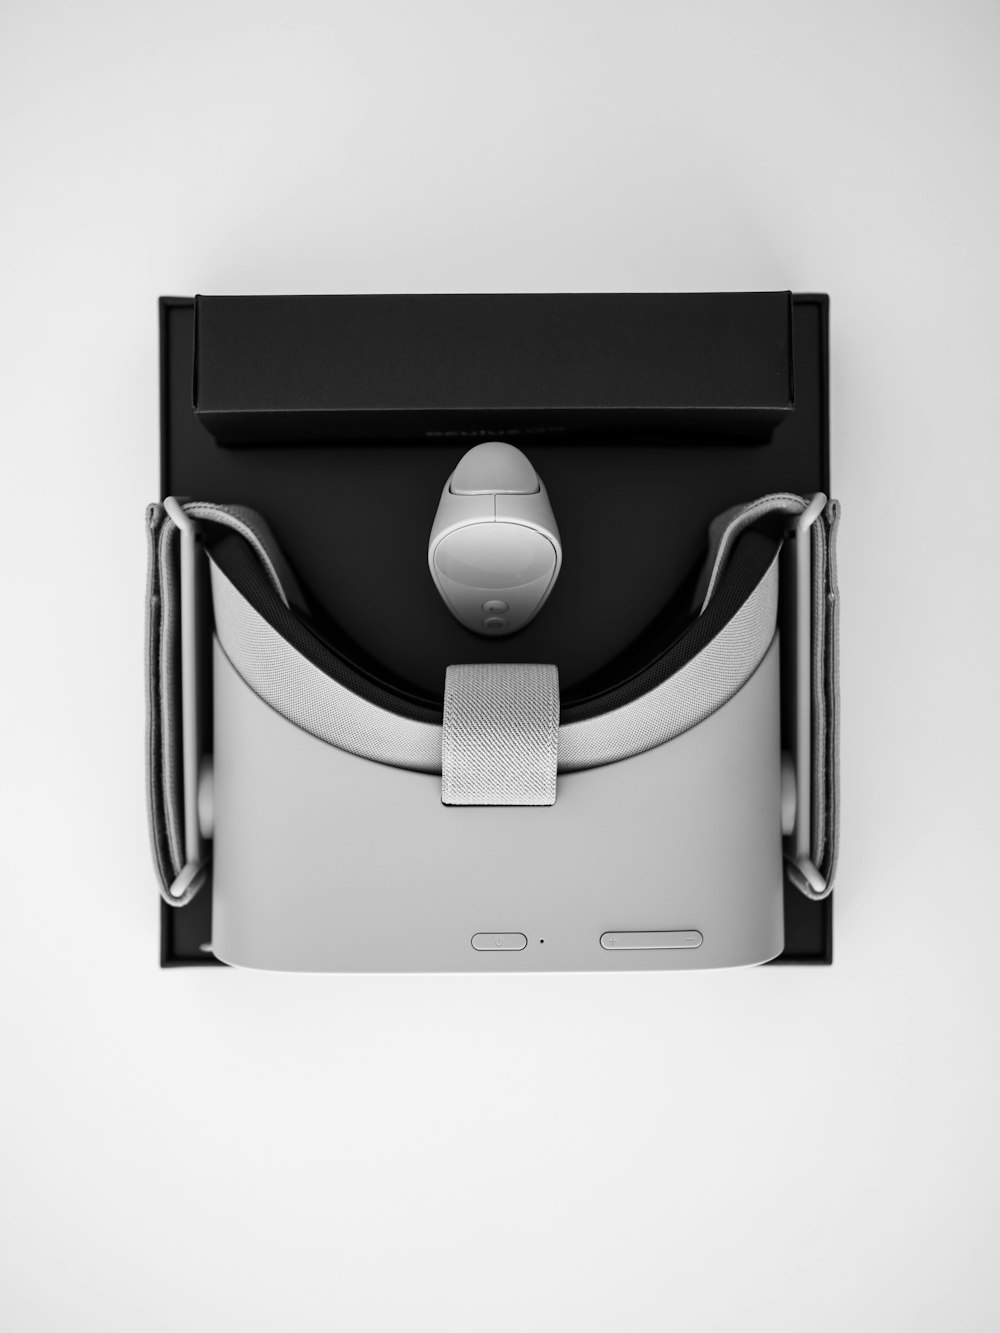 Casco de realidad virtual negro y gris con caja